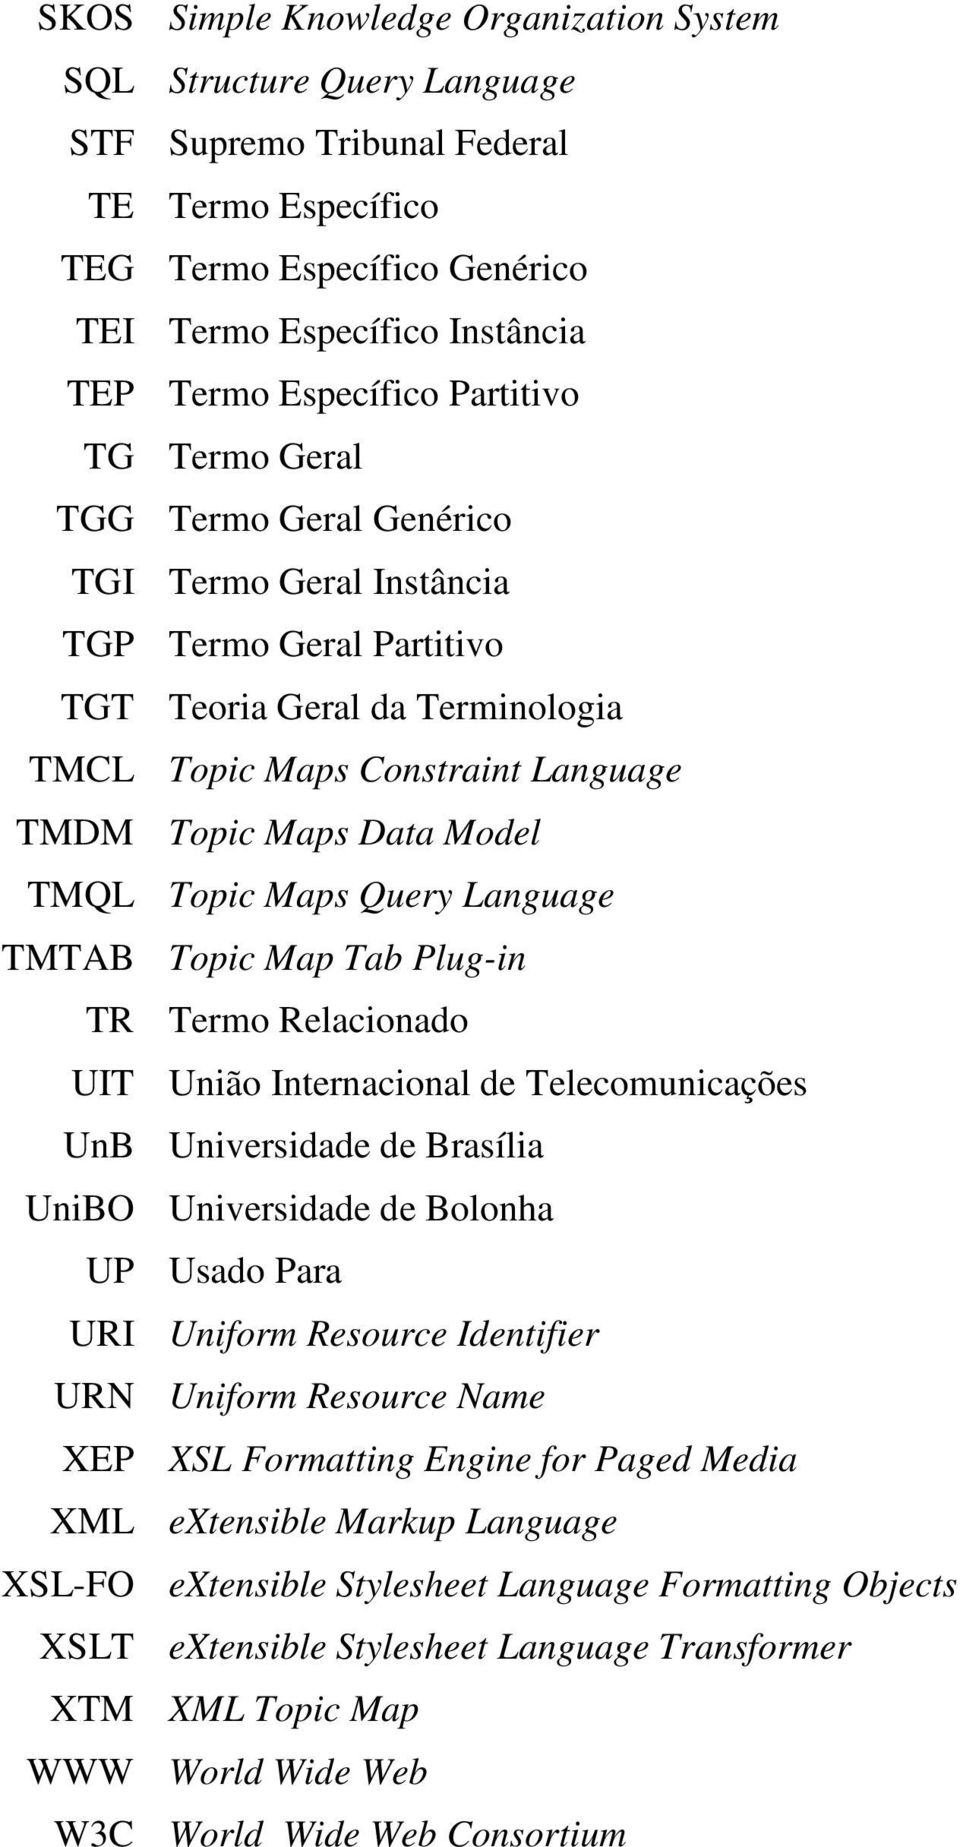 Data Model TMQL Topic Maps Query Language TMTAB Topic Map Tab Plug-in TR Termo Relacionado UIT União Internacional de Telecomunicações UnB Universidade de Brasília UniBO Universidade de Bolonha UP